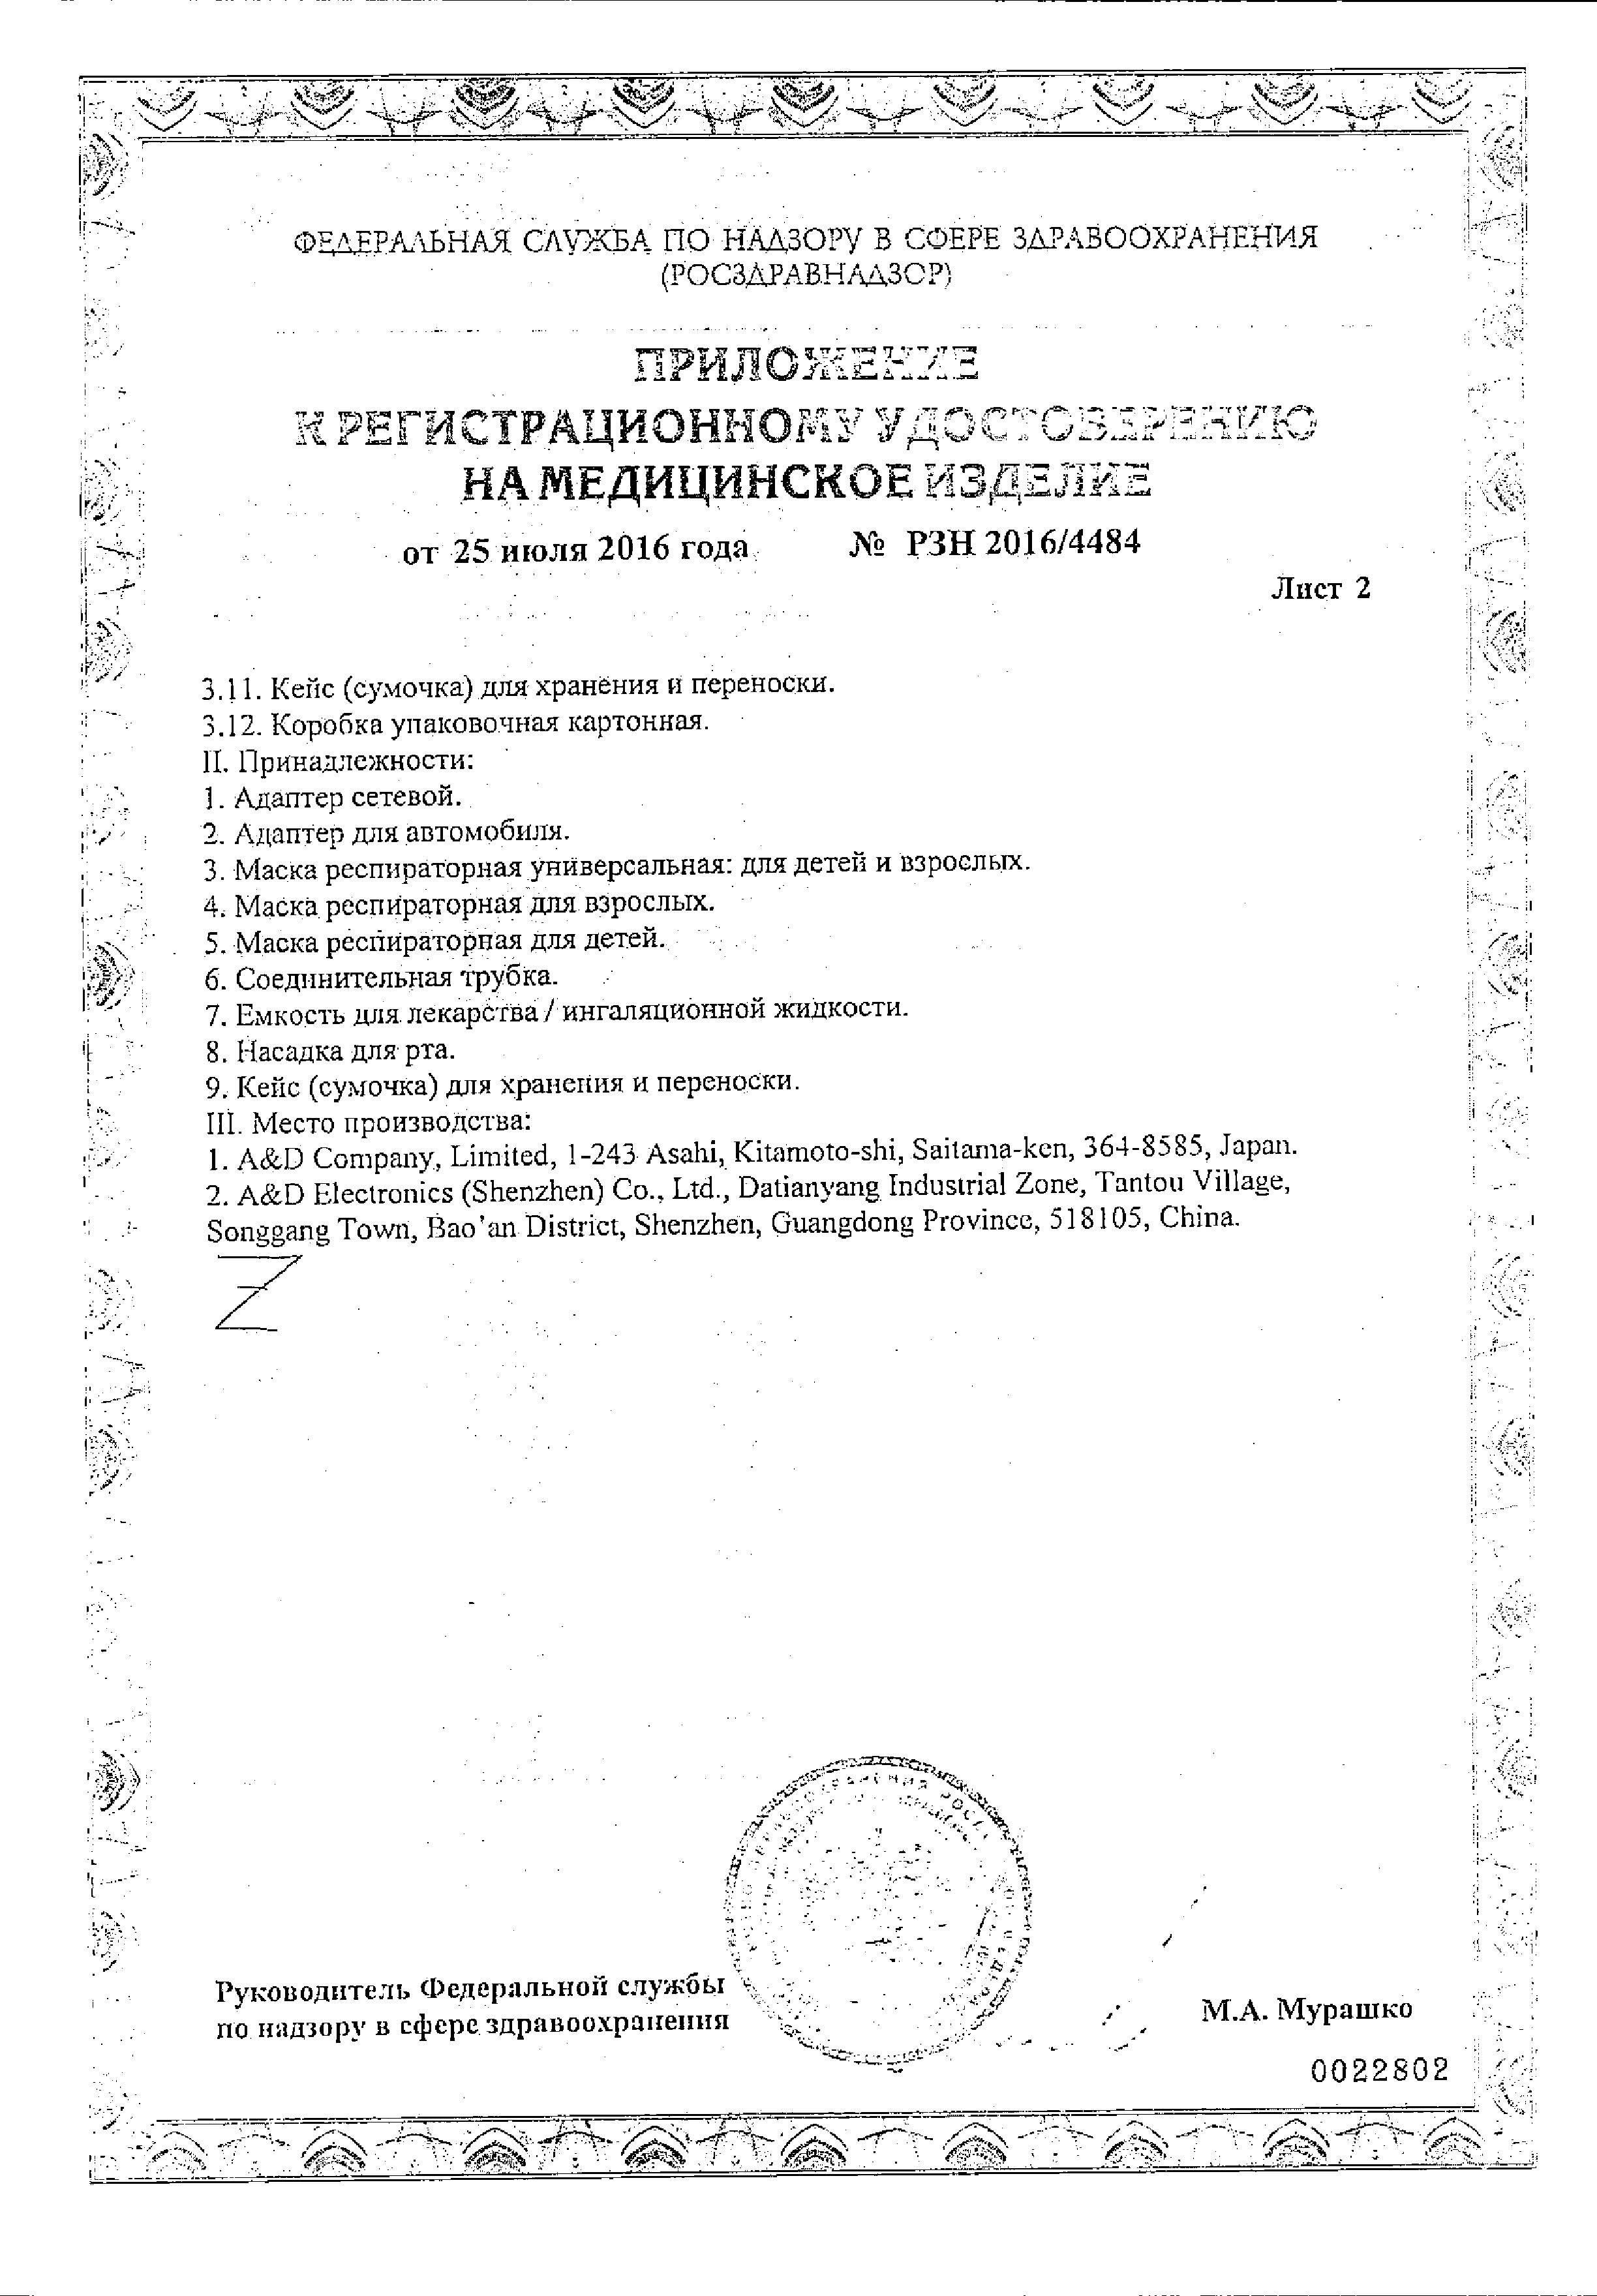 Ингалятор ультразвуковой AND UN-231 сертификат